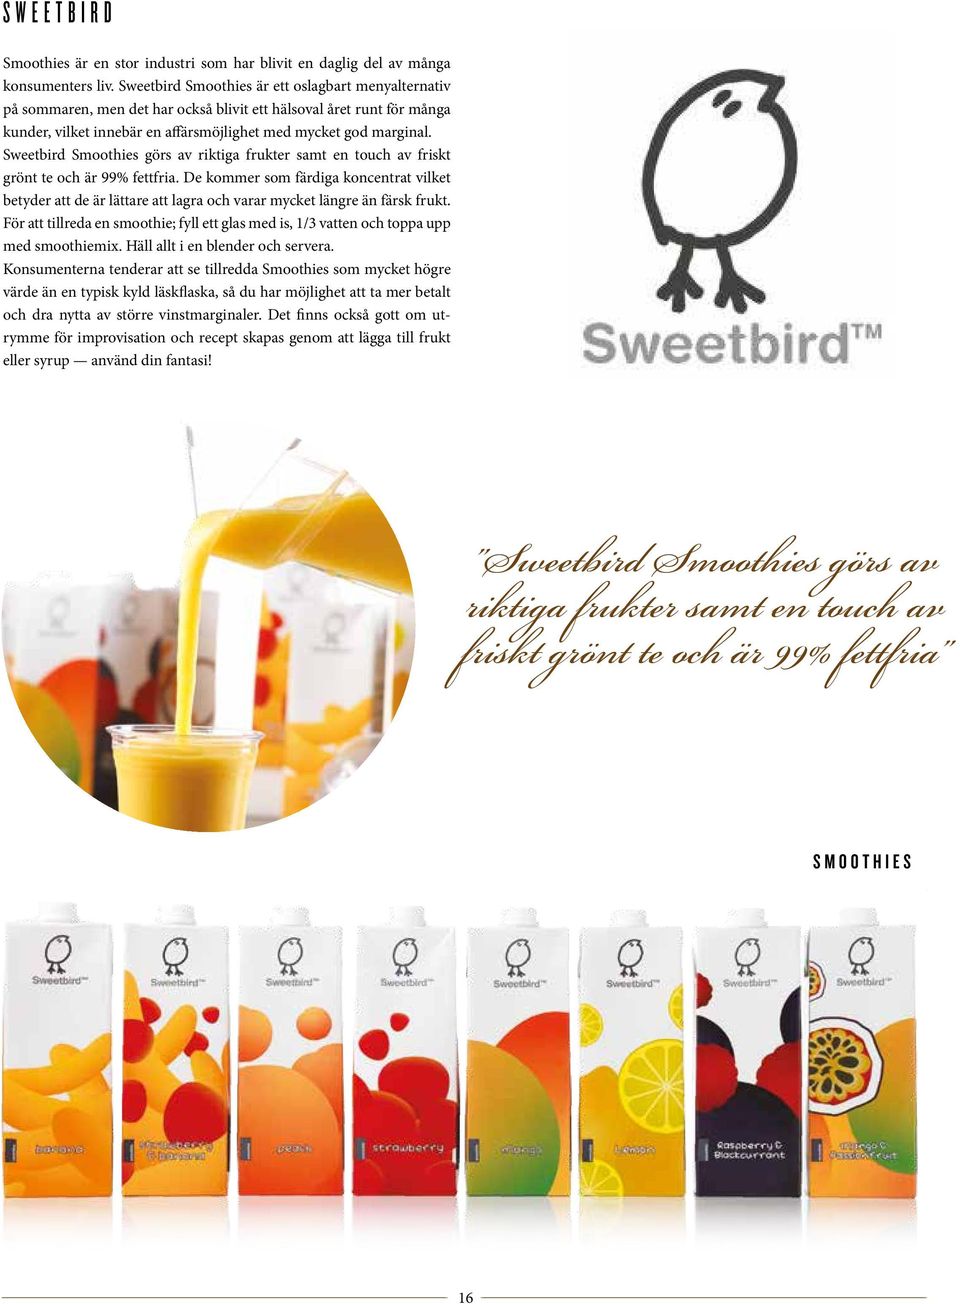 Sweetbird Smoothies görs av riktiga frukter samt en touch av friskt grönt te och är 99% fettfria.